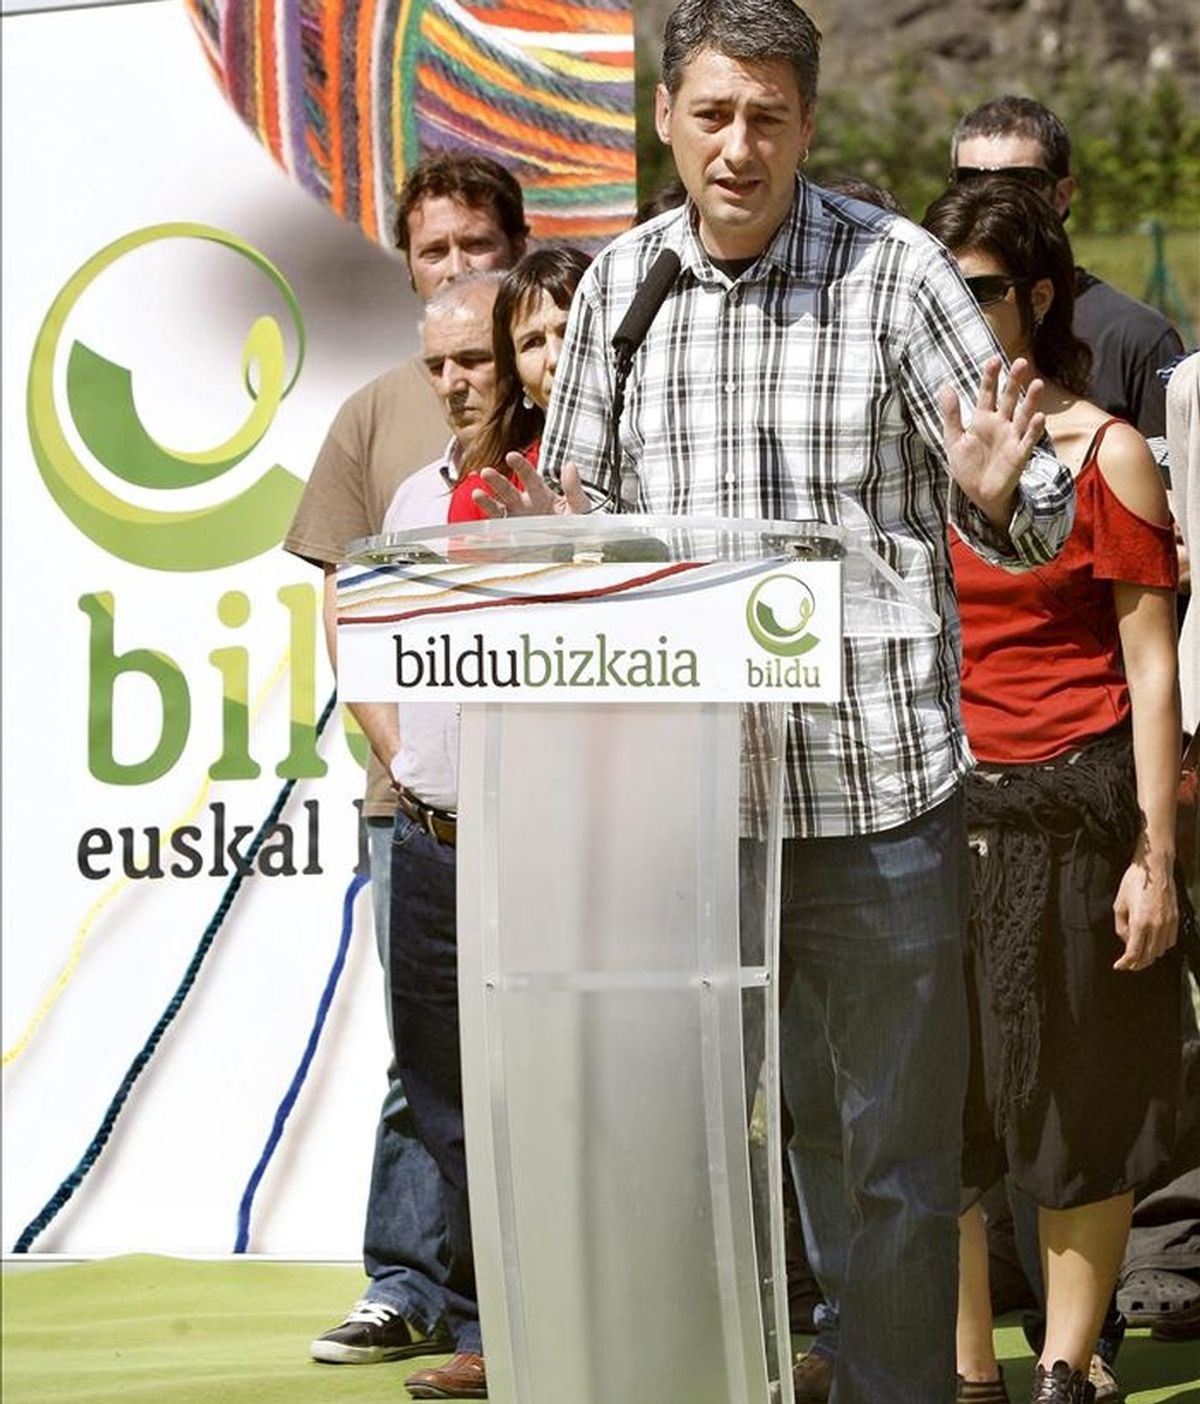 El portavoz de Bildu, Oskar Matute, durante una rueda de prensa. EFE/Archivo